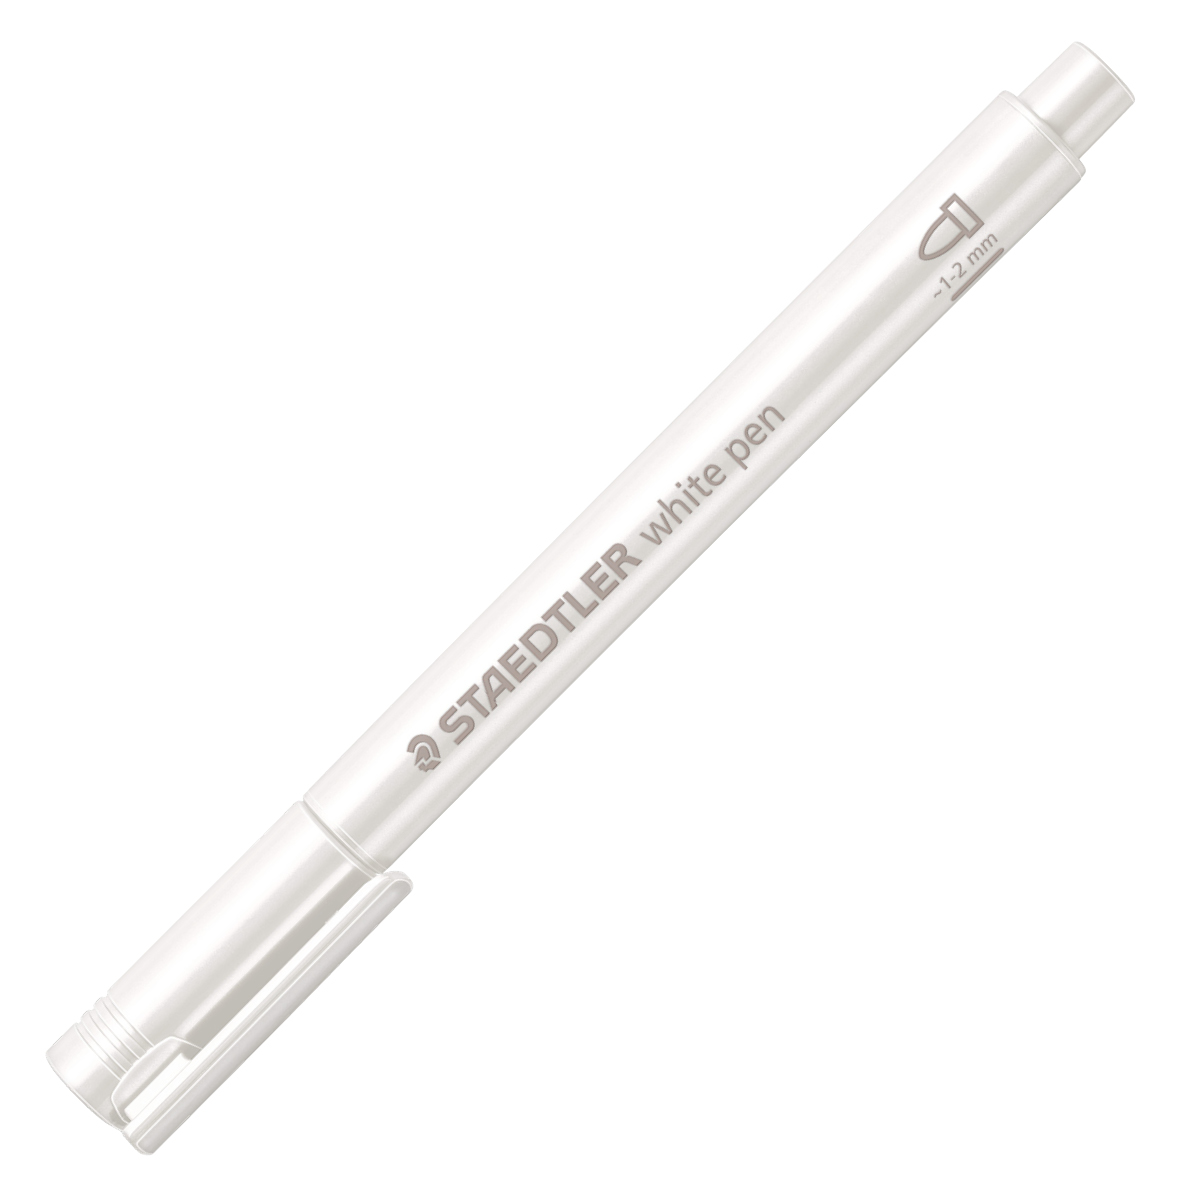 White pen in the group Pens / Artist Pens / Felt Tip Pens at Pen Store (126590)